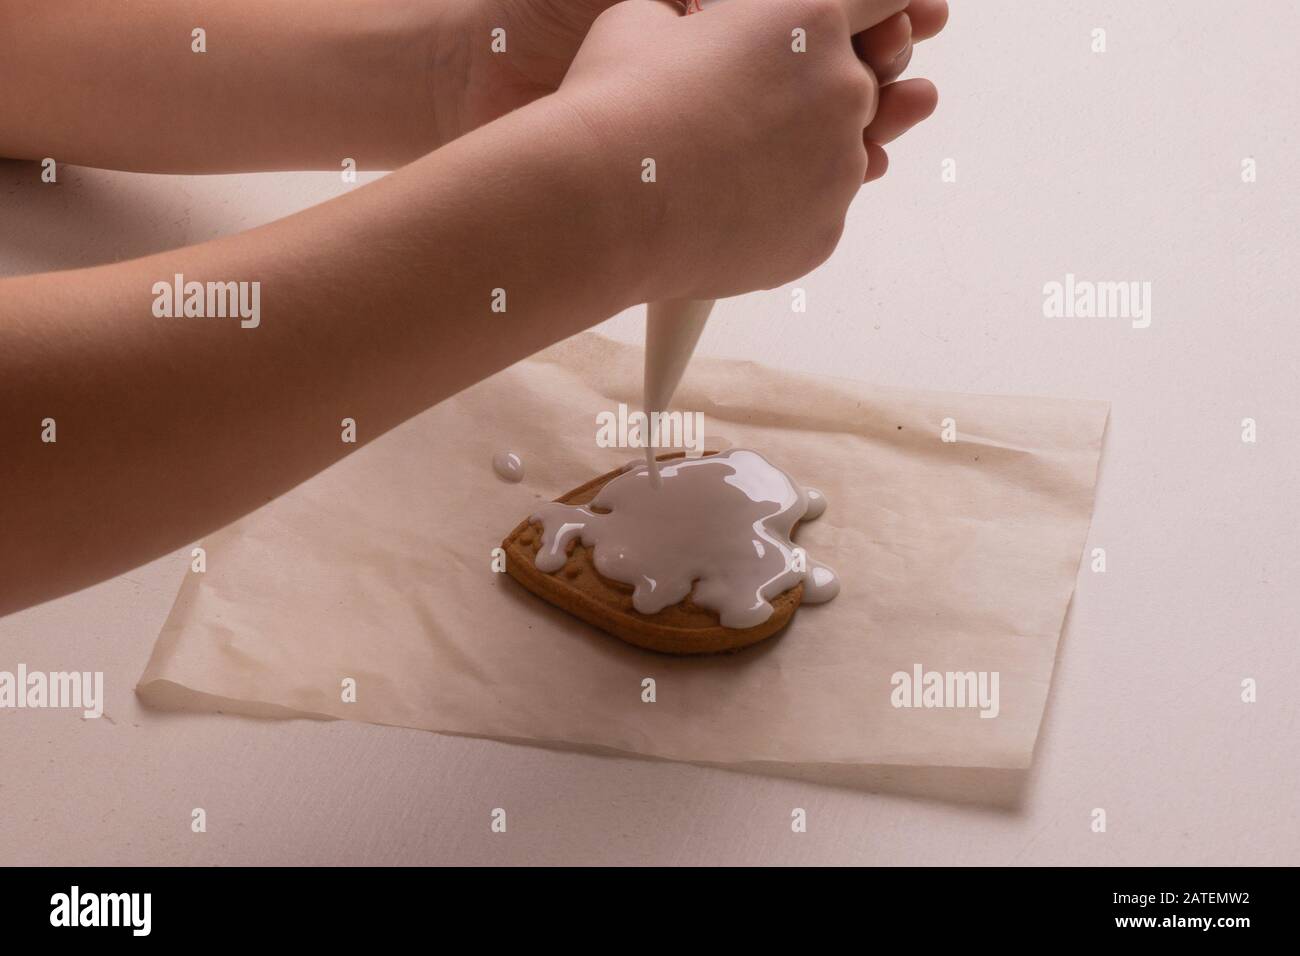 Ein 10-jähriger Junge glasiert Plätzchen mit einer kulinarischen Tüte. Handgefertigt. Kreativität der Kinder Stockfoto